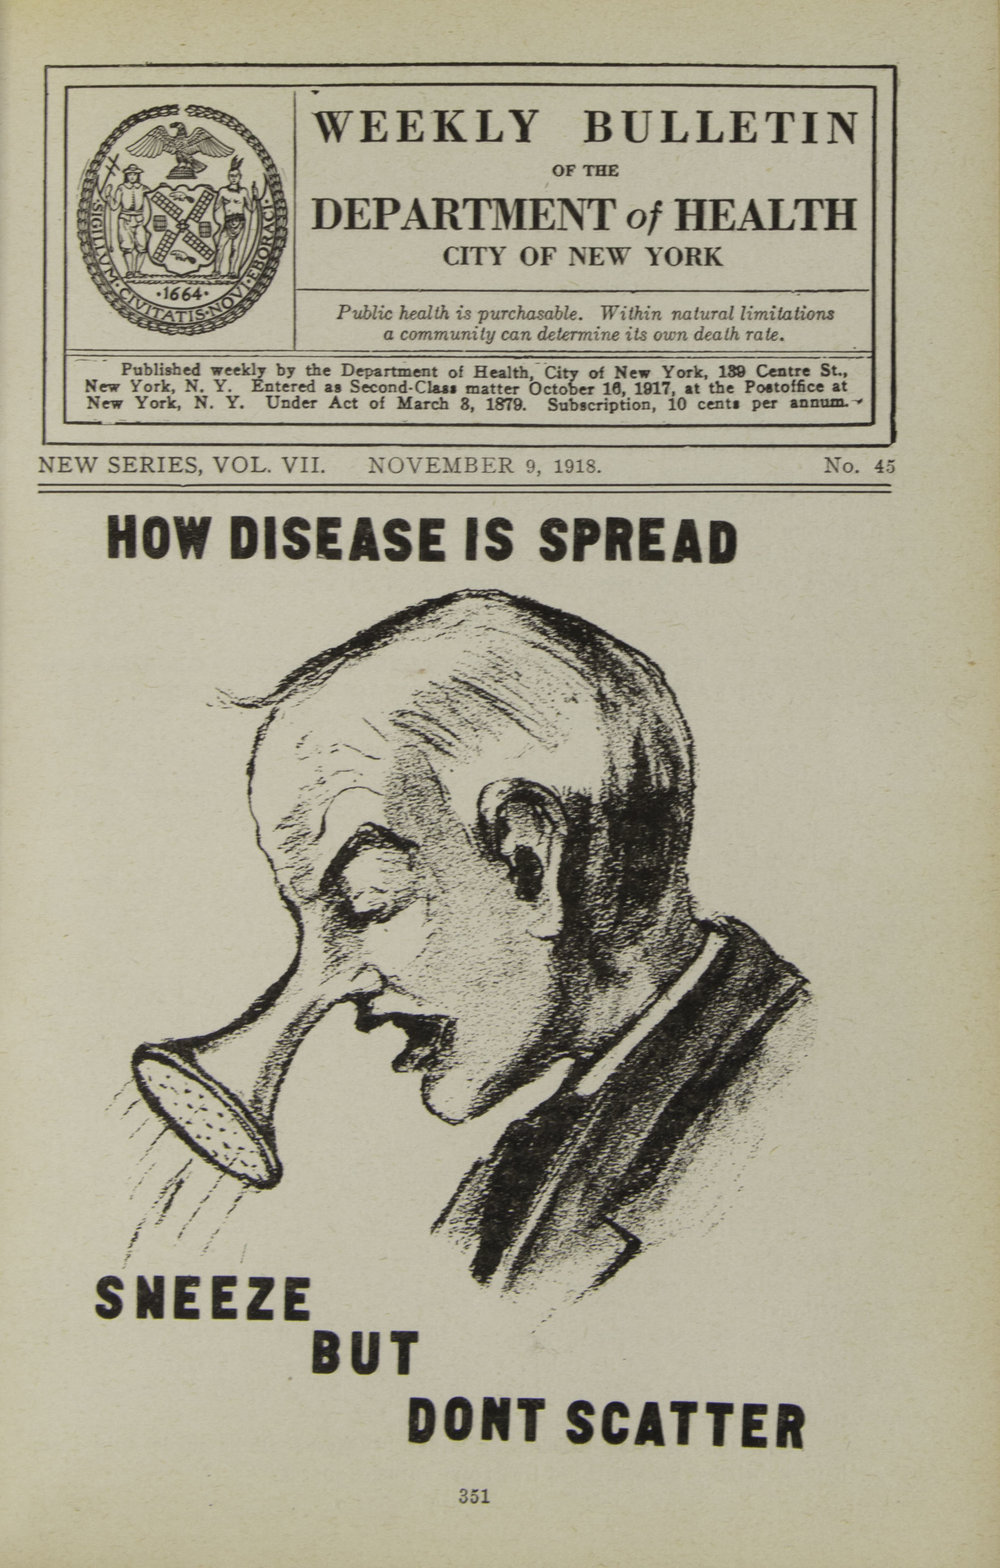 &laquo;Чихай, но не разбрызгивай&raquo;. Обложка еженедельного бюллетеня Департамента здравоохранения Нью-Йорка, 1918 год